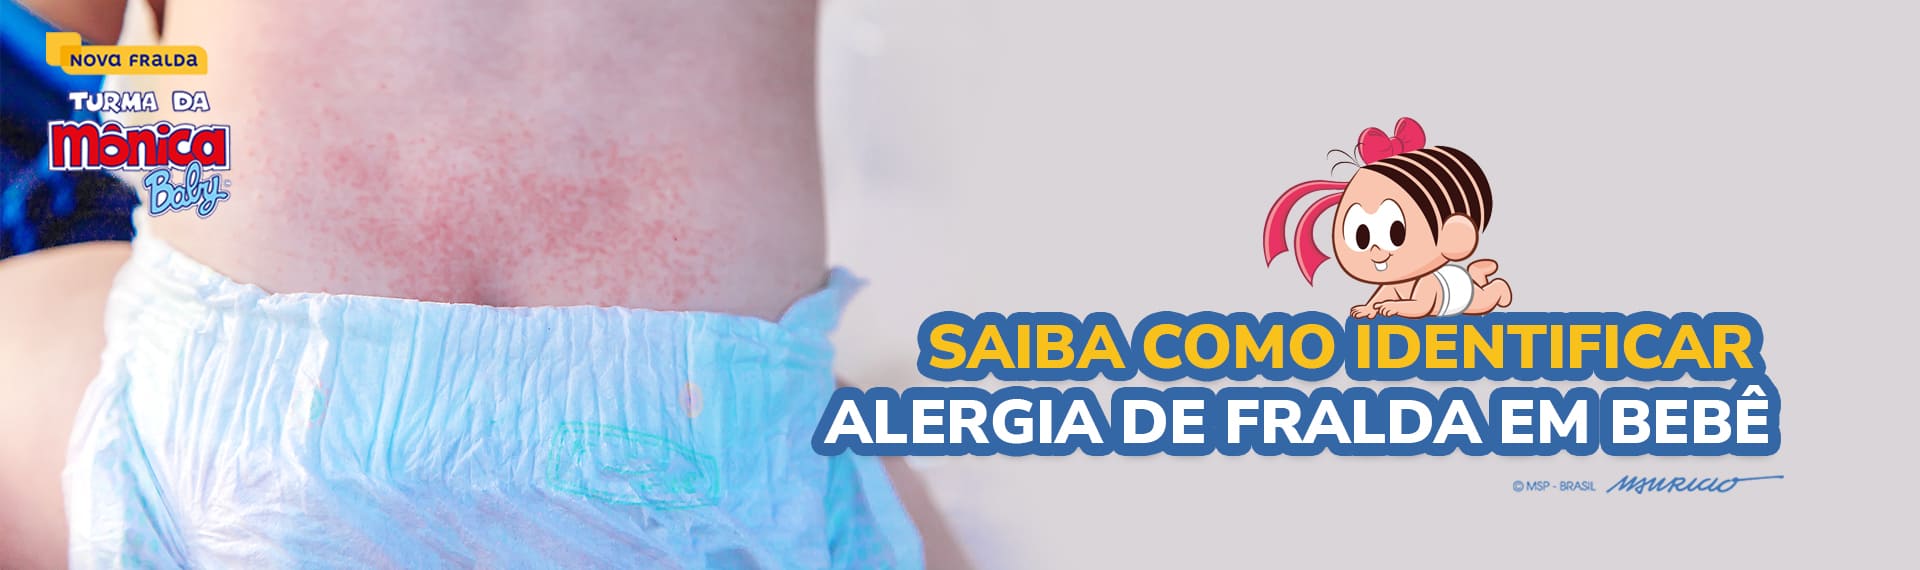 Alergia de fralda em bebê